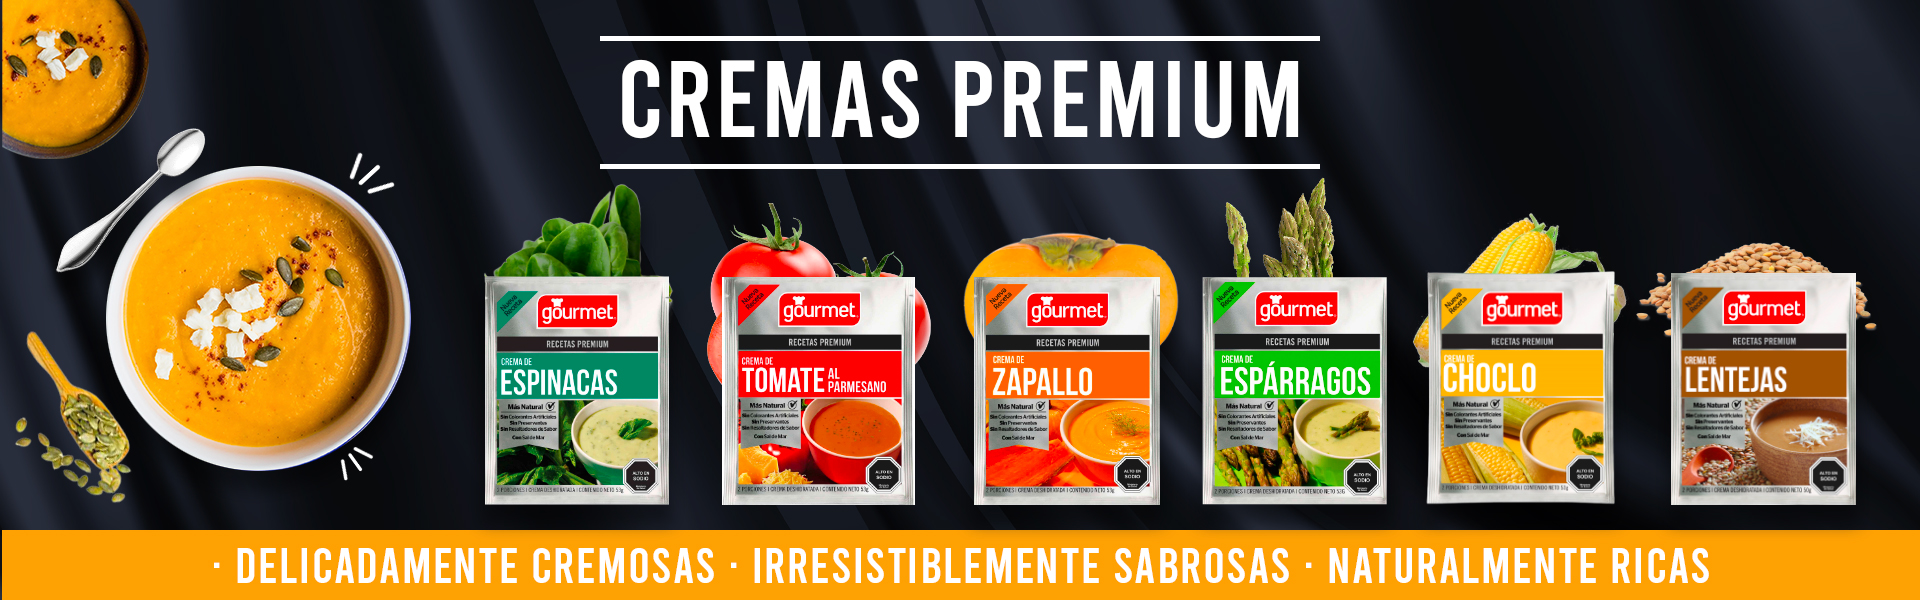 Cremas Premium Gourmet